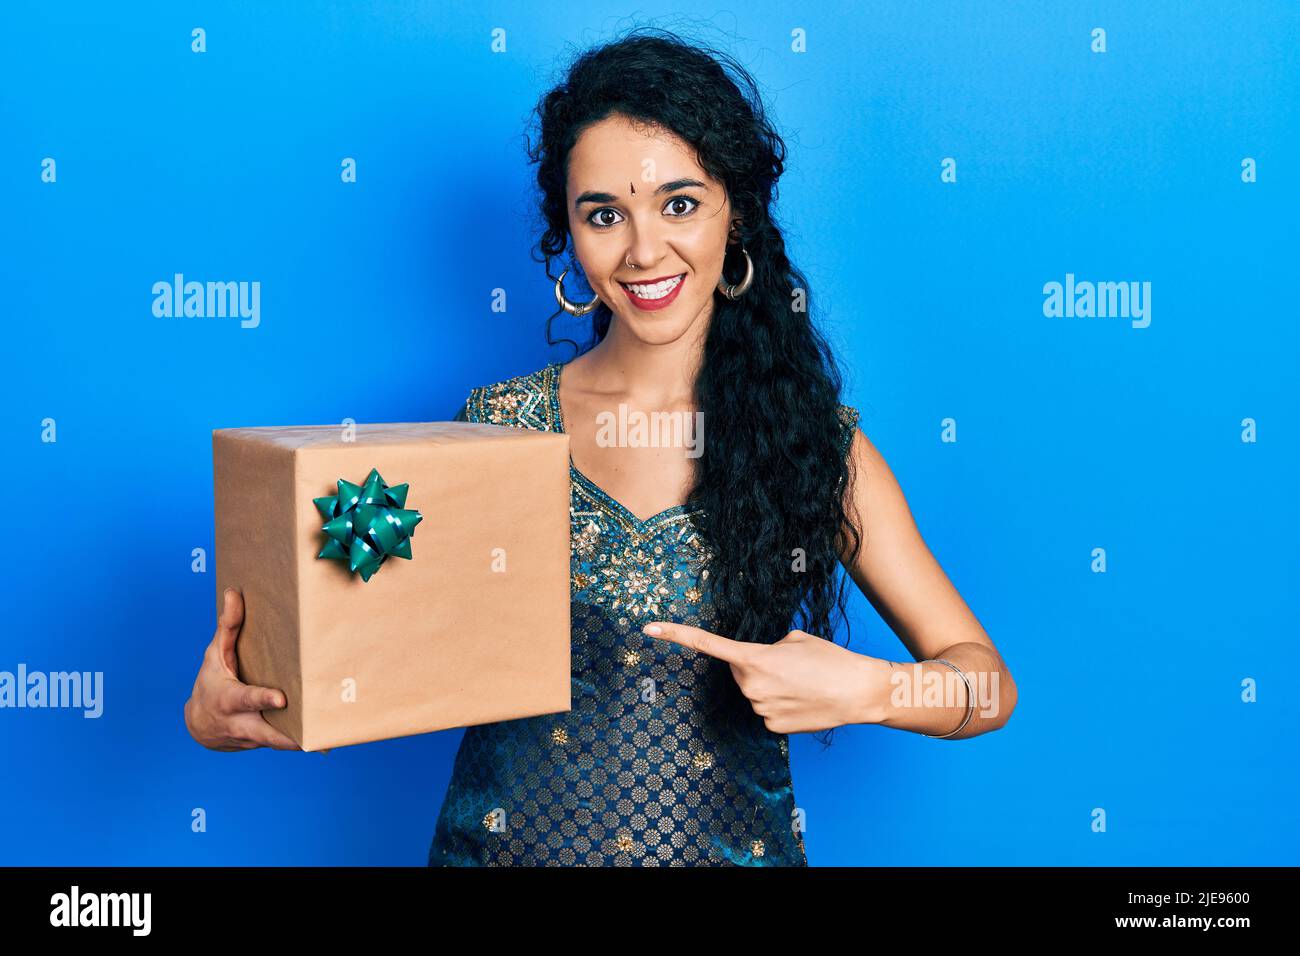 Junge Frau trägt Bindi und traditionelle Kurta Kleid halten Geschenk lächelnd glücklich zeigen mit Hand und Finger Stockfoto